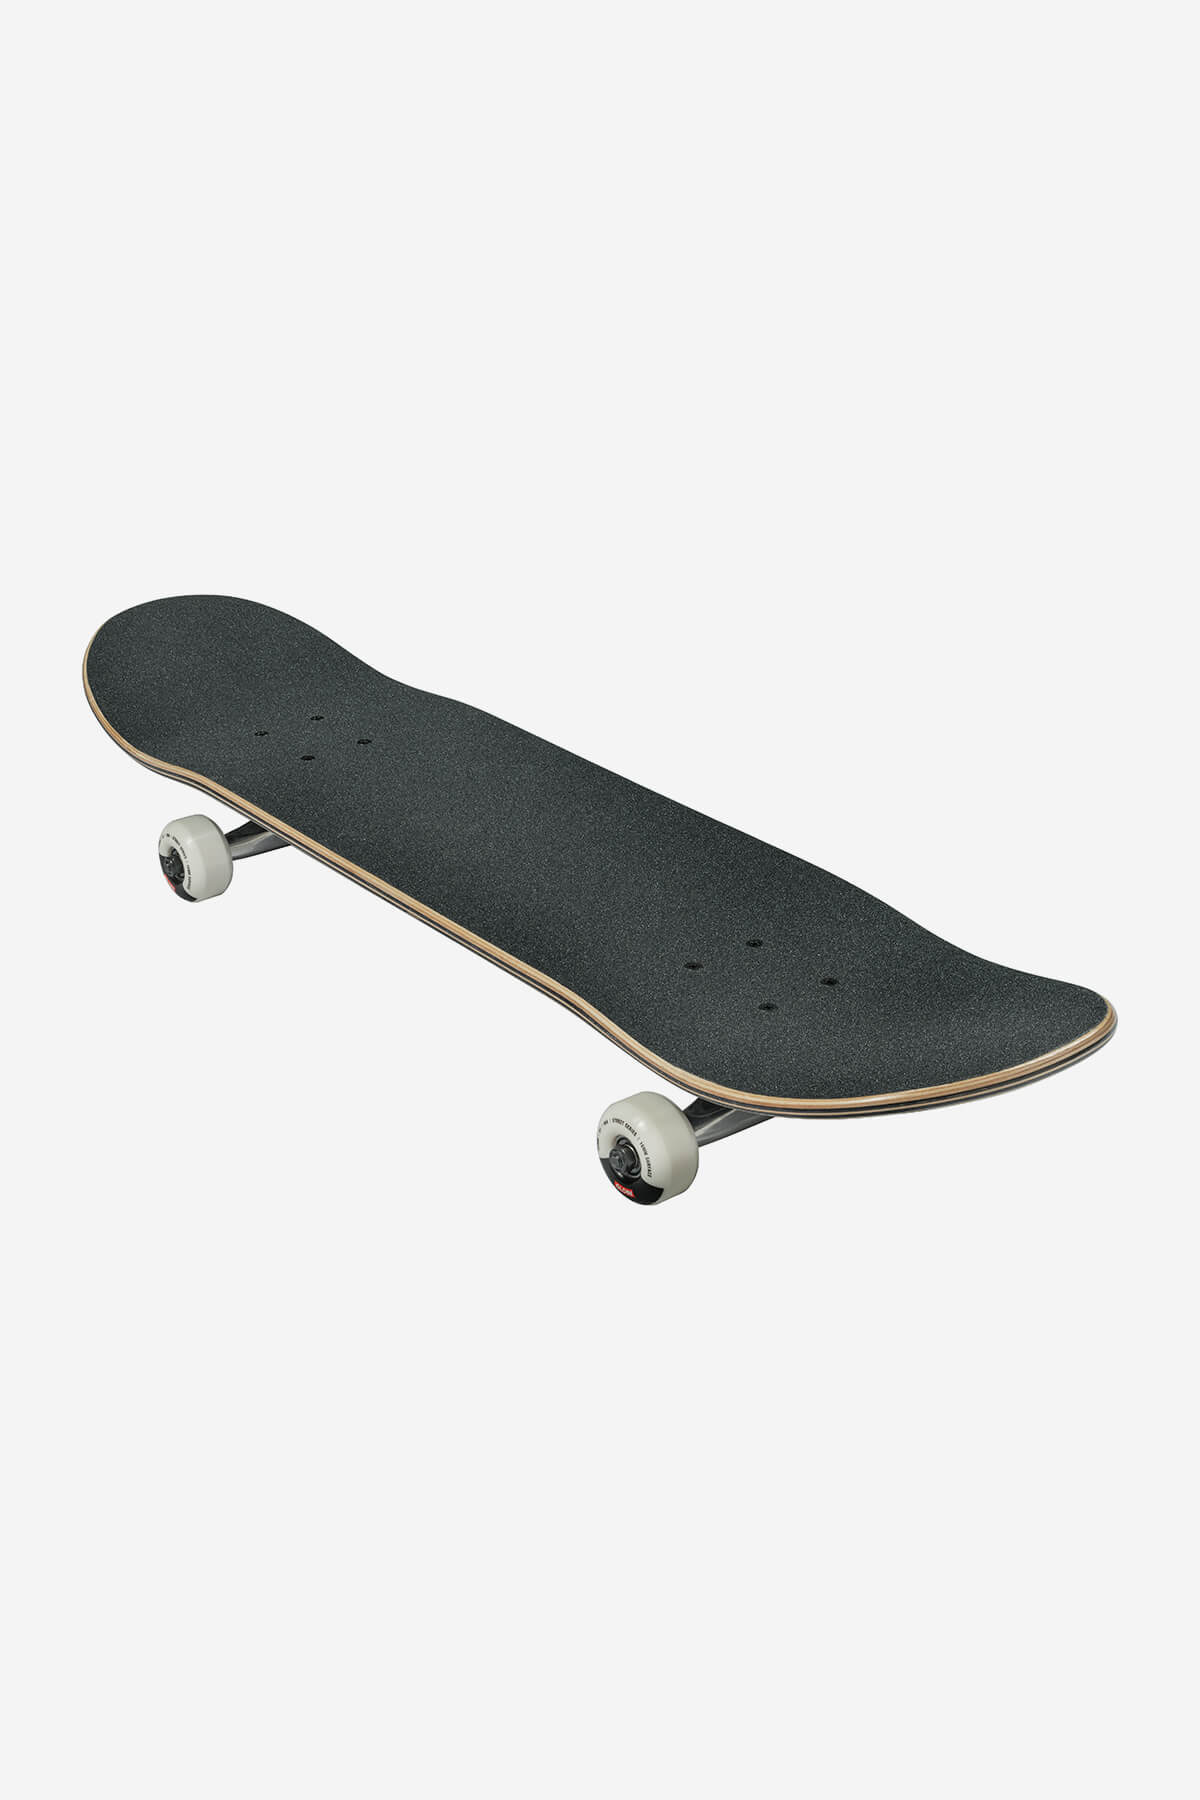 Globe Skateboard complet G1 Lineform 7.75" complet Skateboard en noir